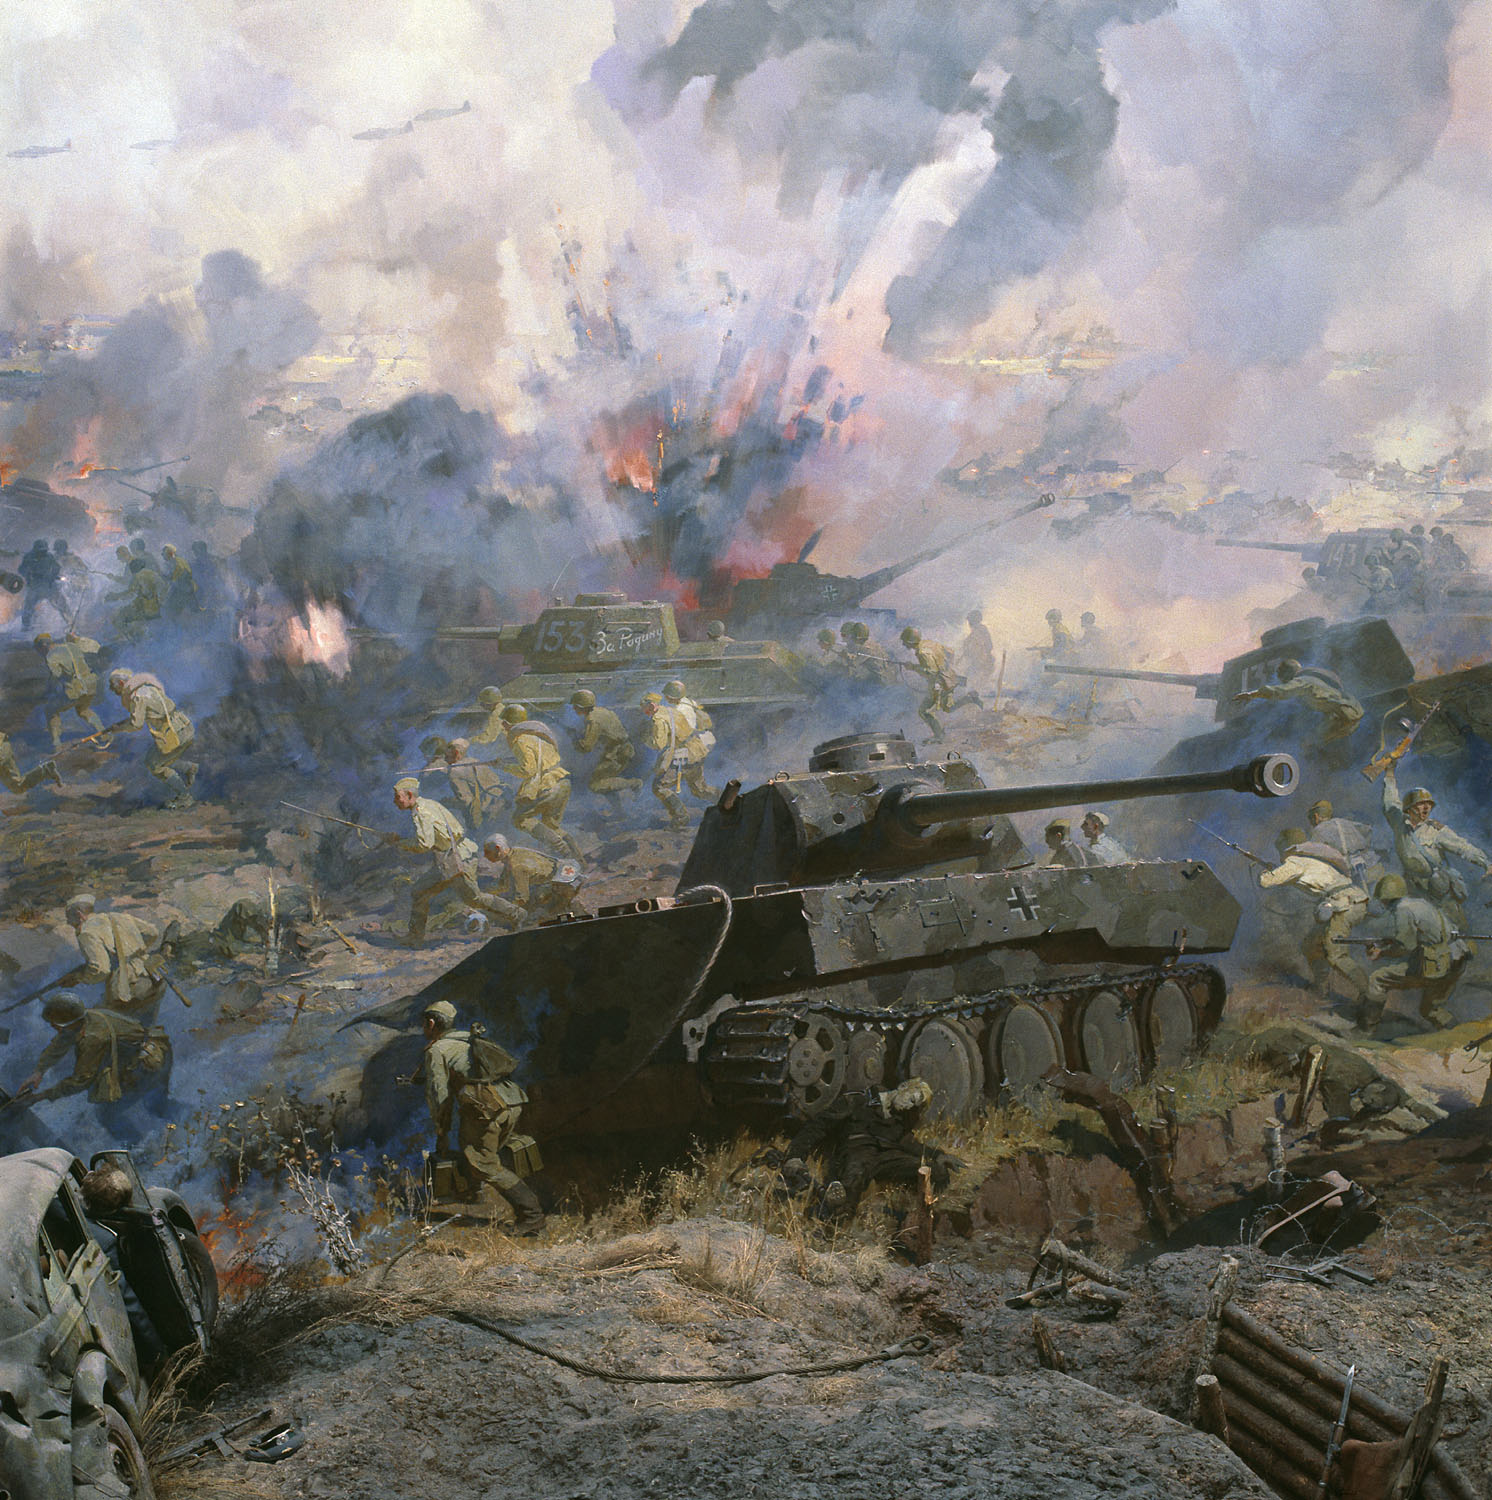 Картинки про велико отечественную войну. Огненная дуга Курская битва. Батальные картины Великой Отечественной войны.